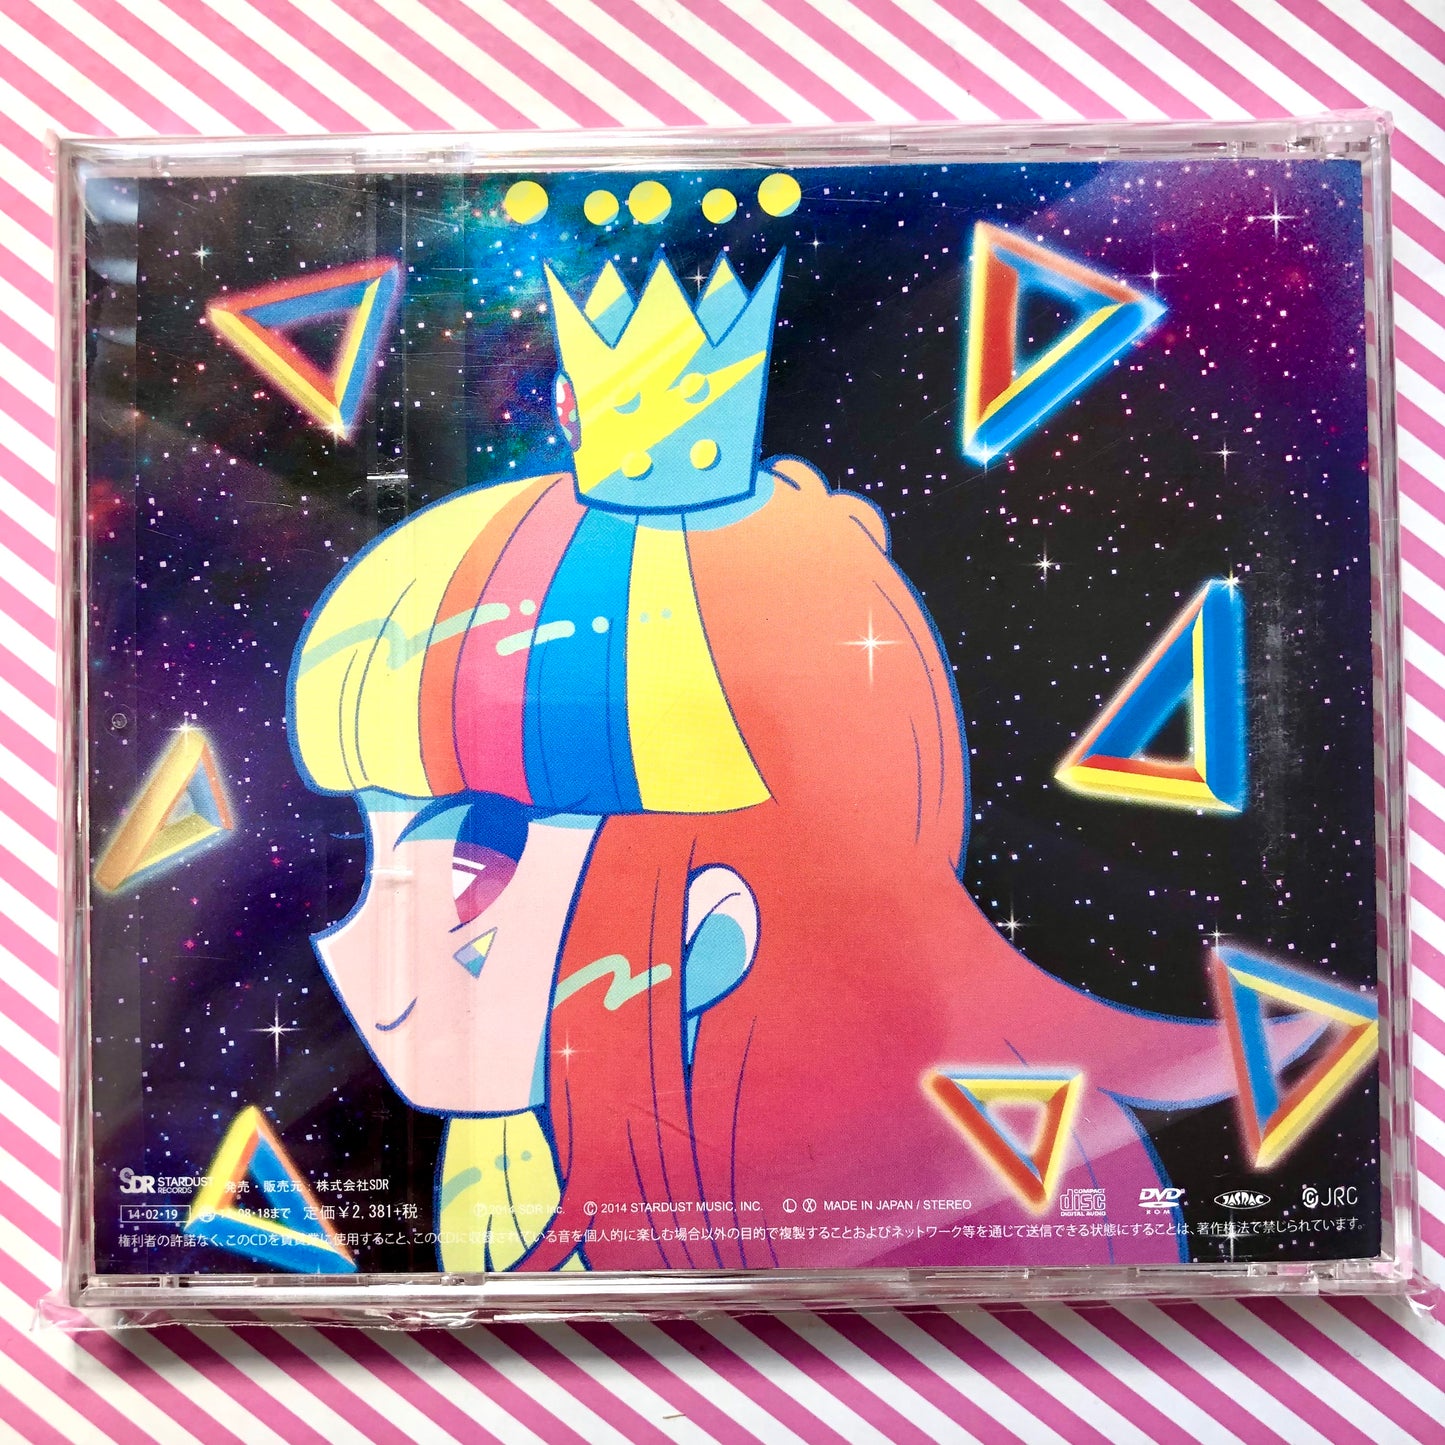 GALACO Super Best [Édition Deluxe] (CD + DVD) - CD d'album de compilation Vocaloid Hatsune Miku